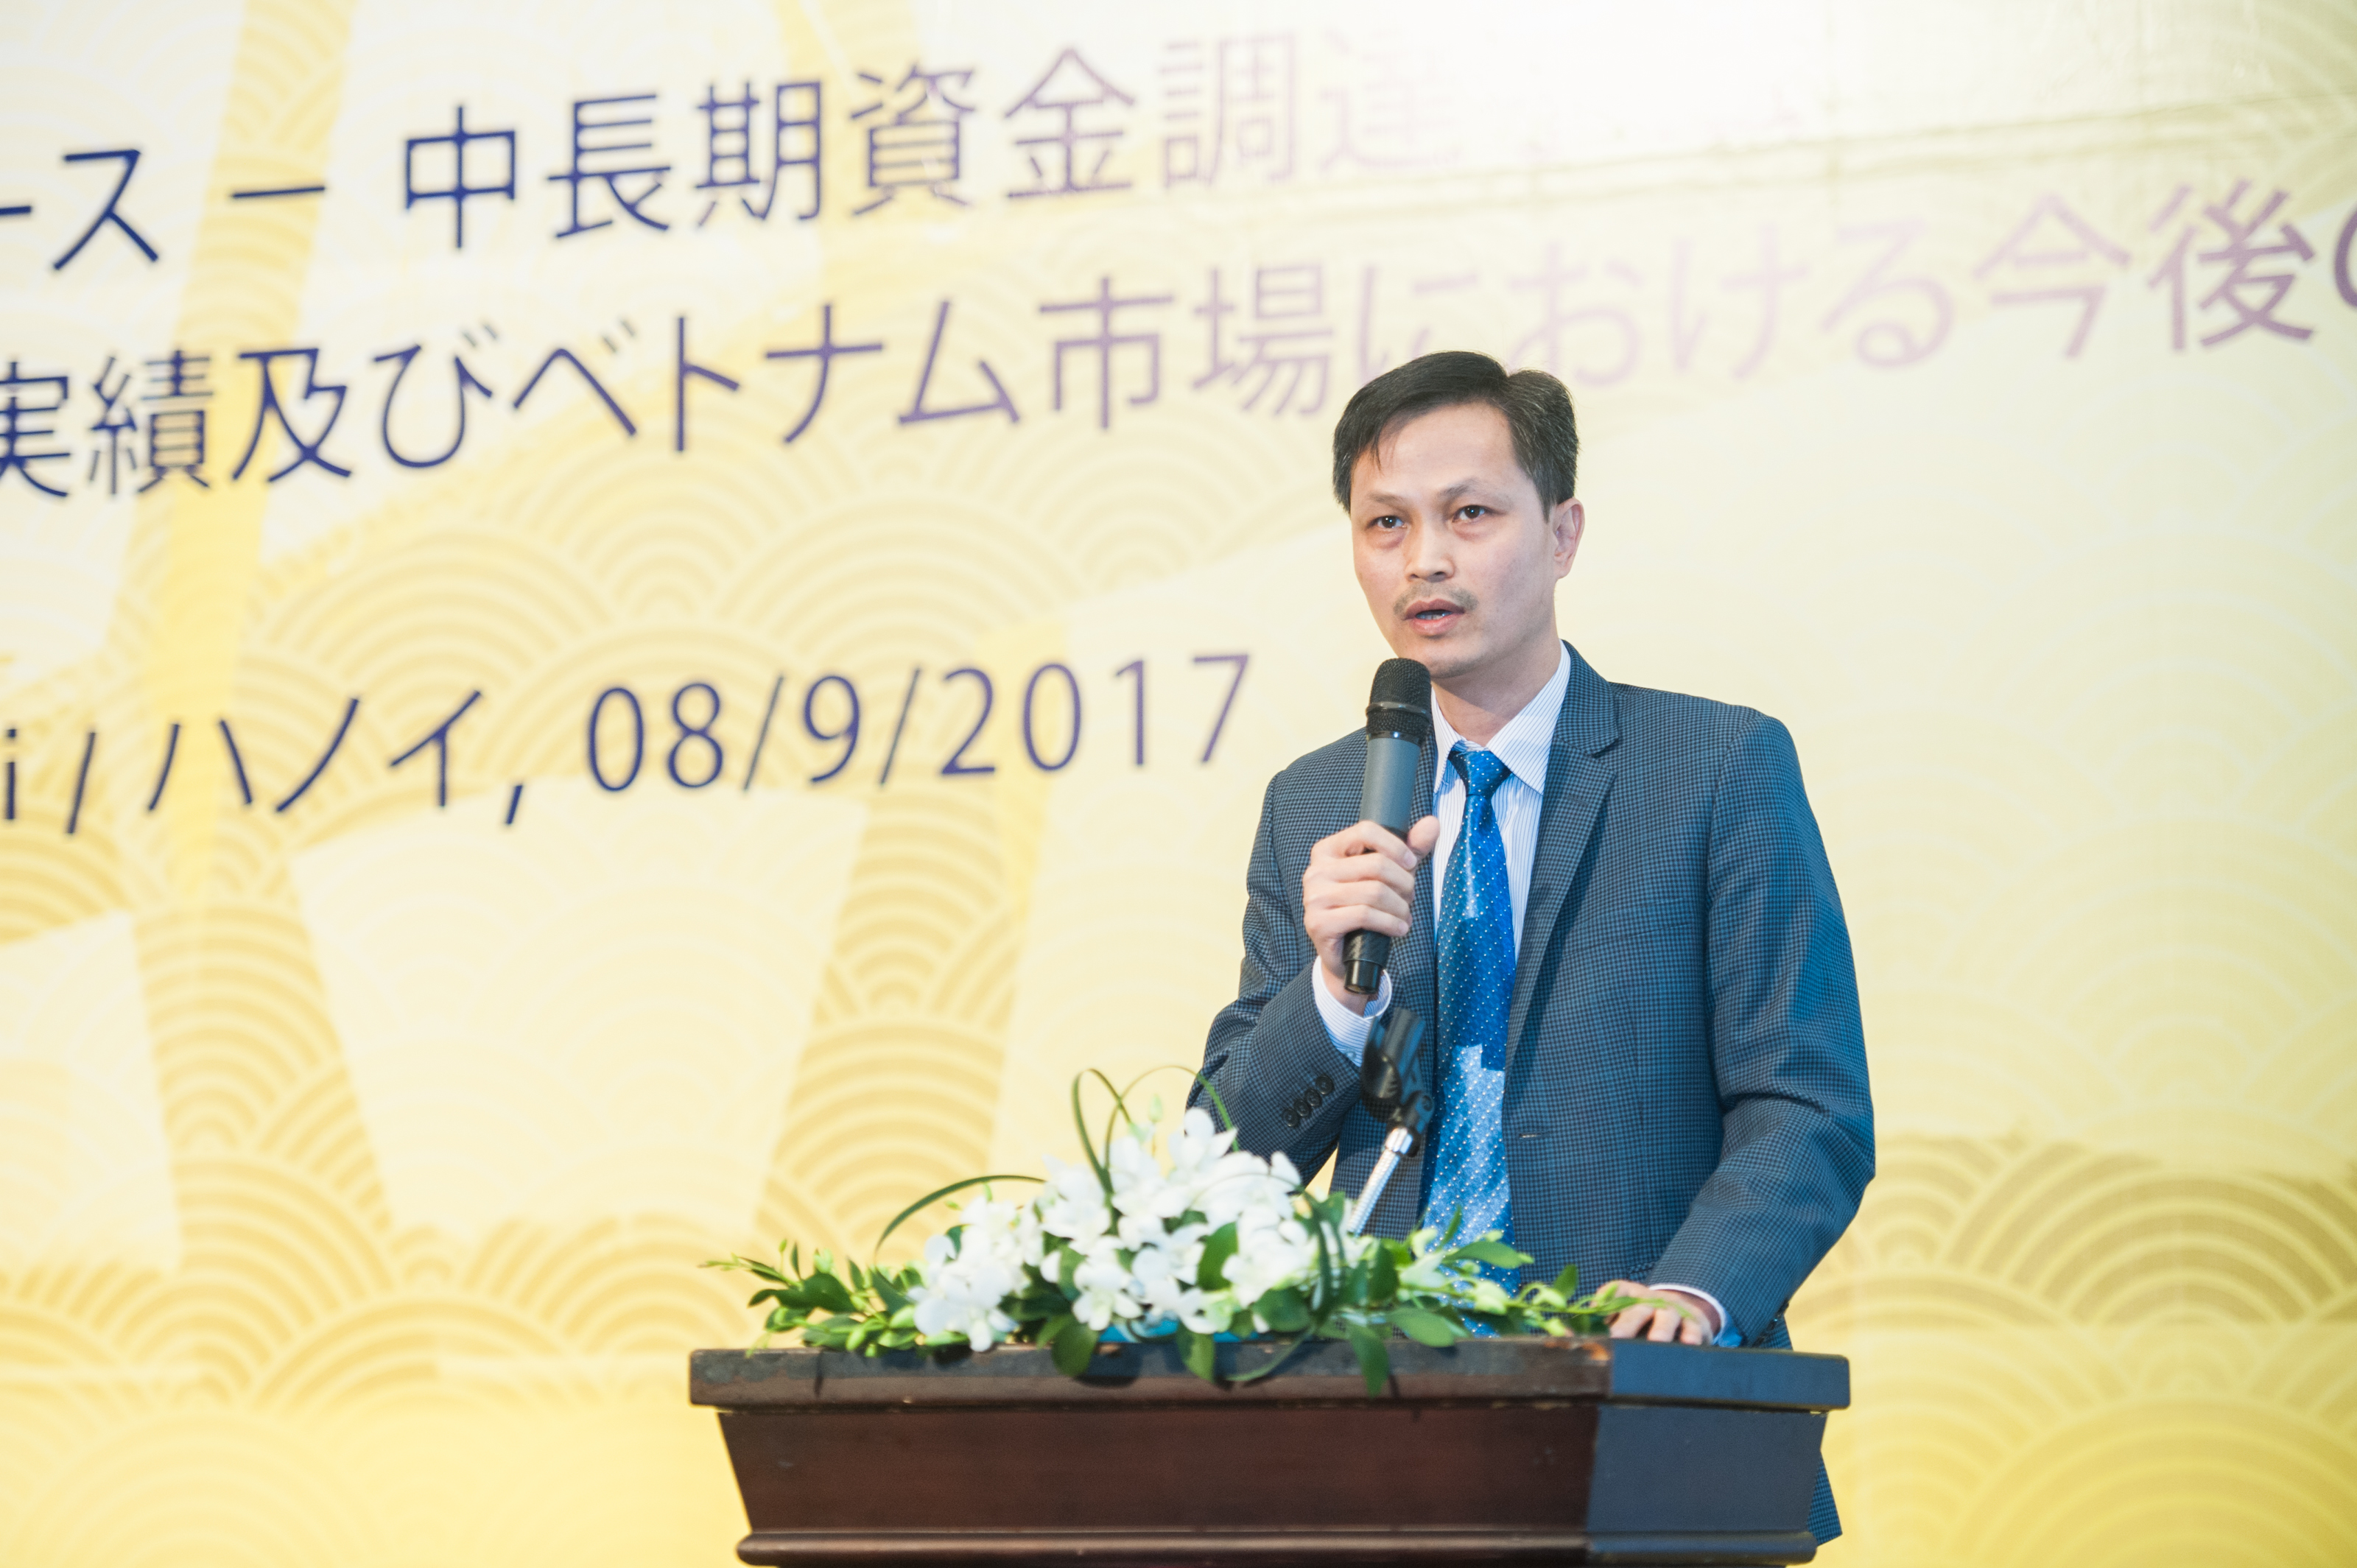 Ông Nguyễn Trọng Du, Vụ trưởng Vụ 5 Cơ quan TTGSNH tham luận về khuôn khổ pháp lý và định hướng chính sách với thị trường cho thuê tài chính ở Việt Nam